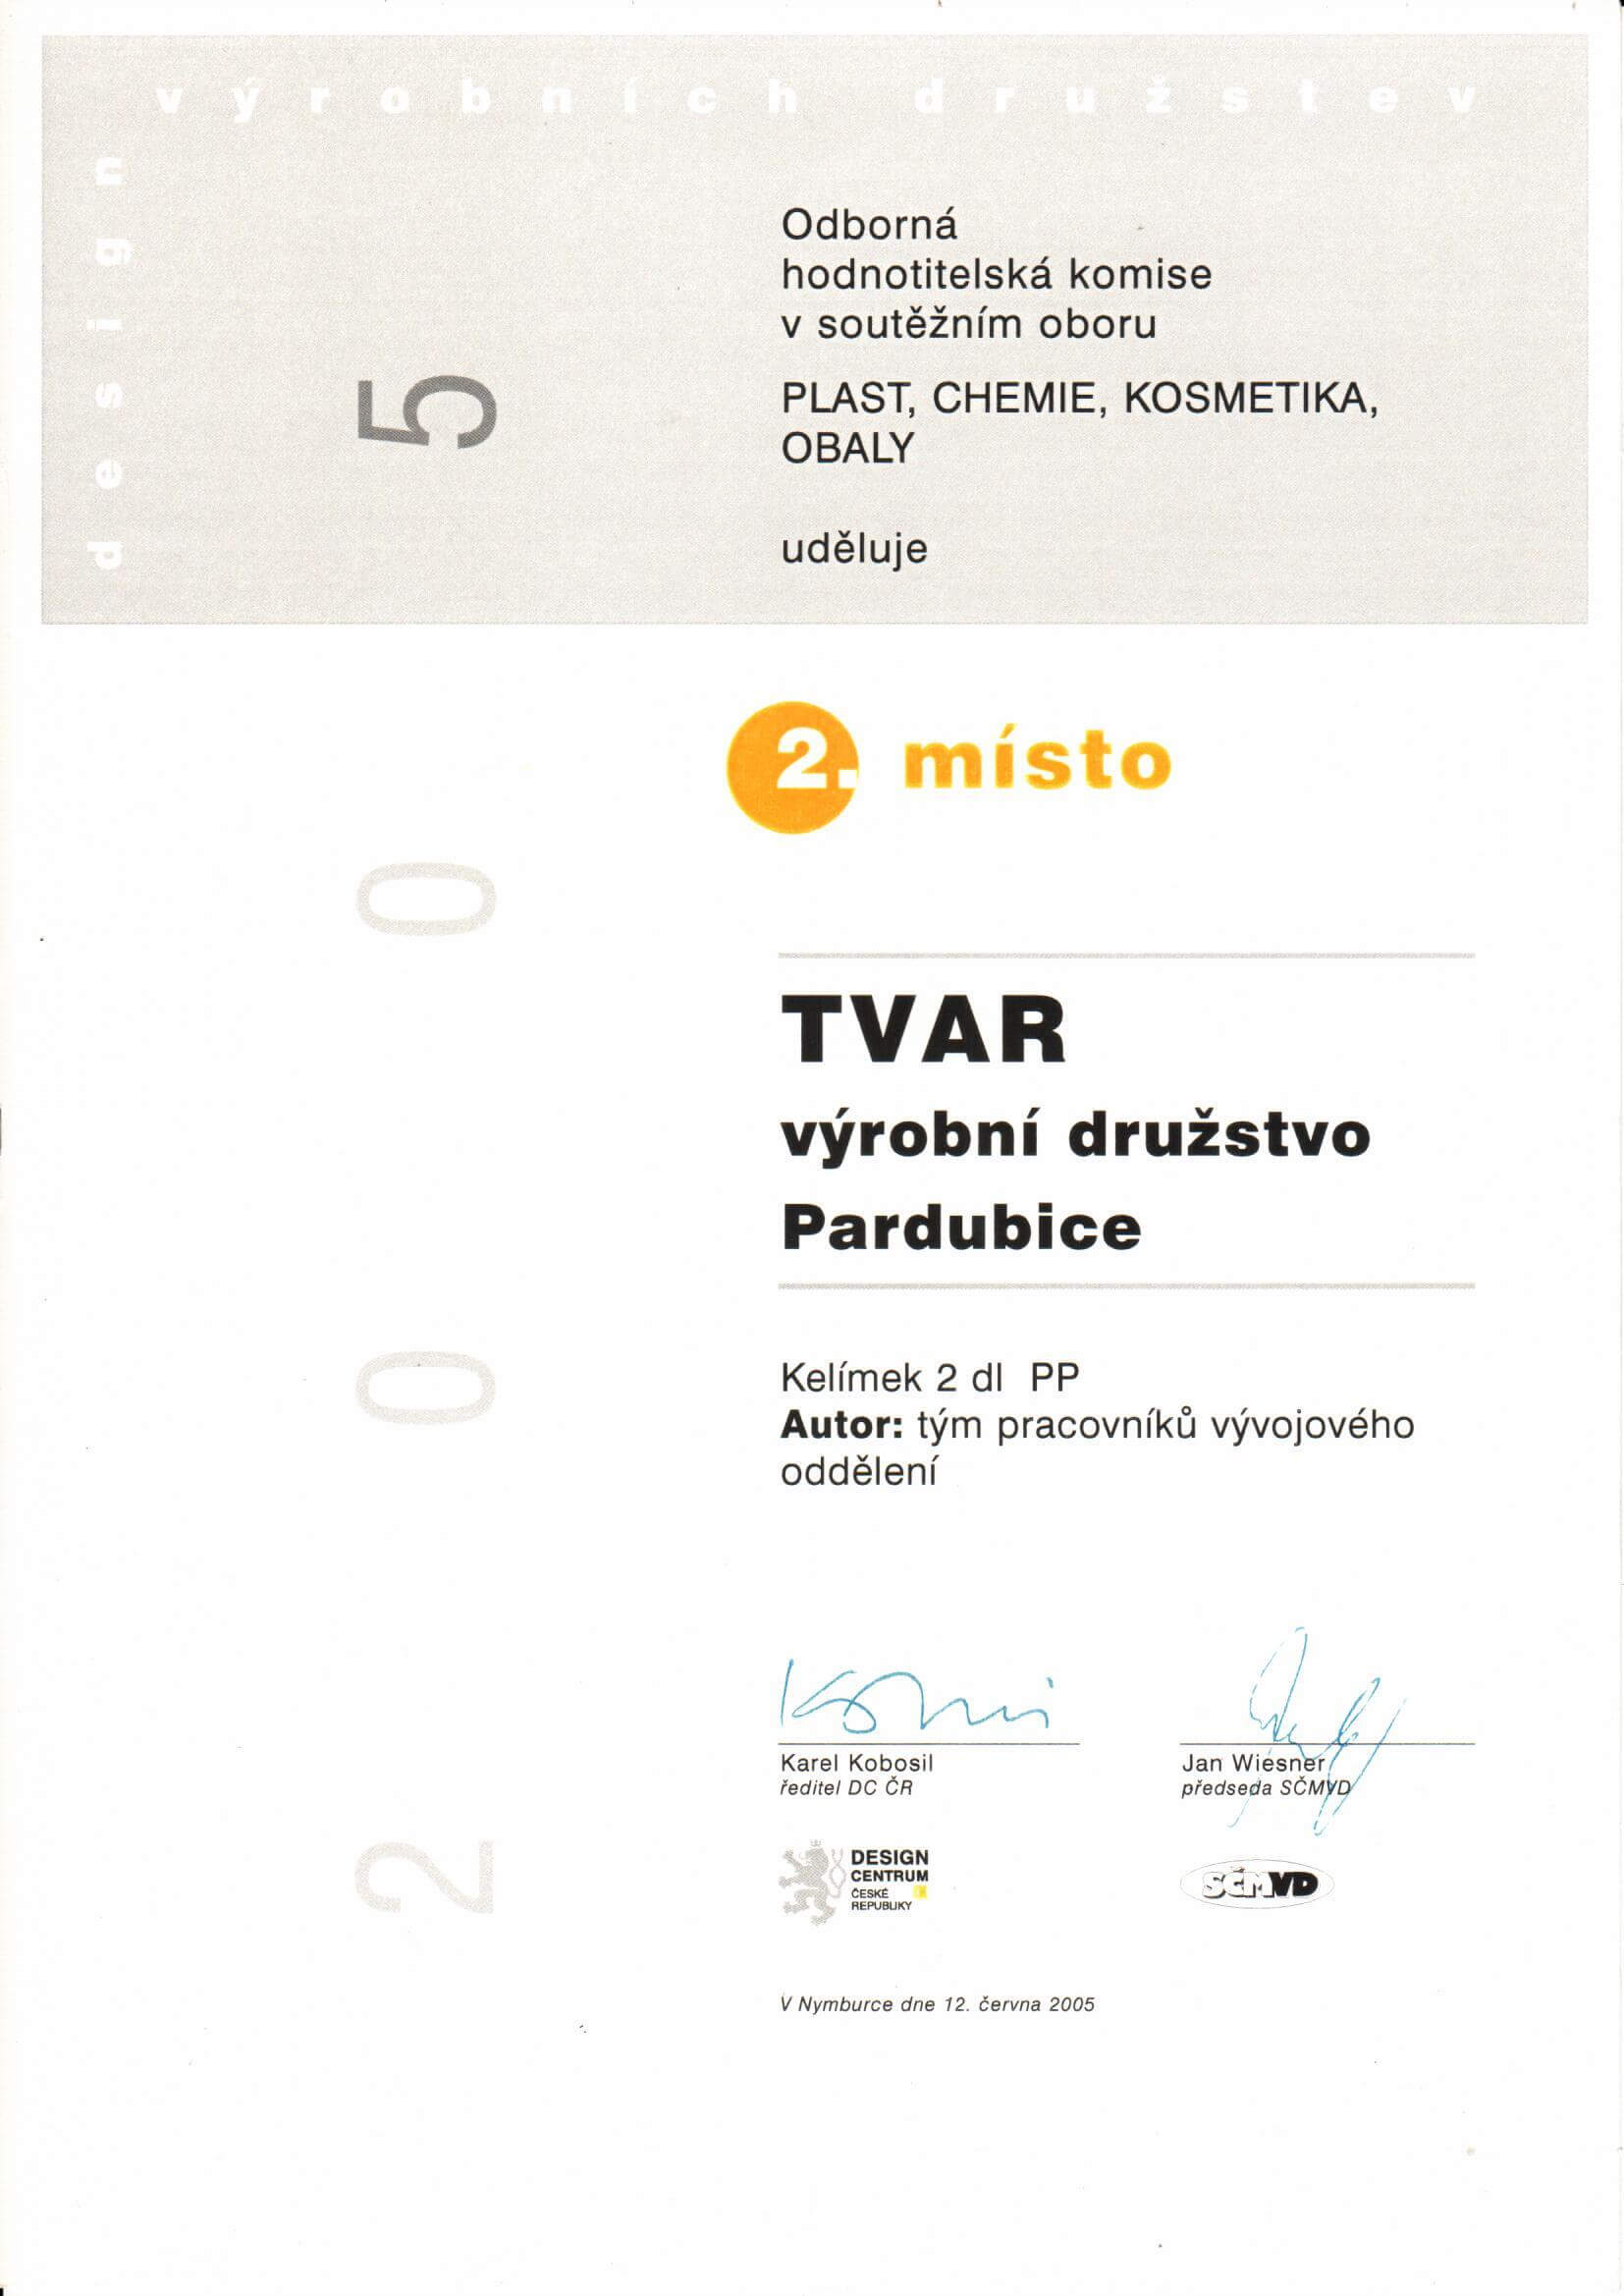 Certificate Design VD 2005 - kelímek 2 dl